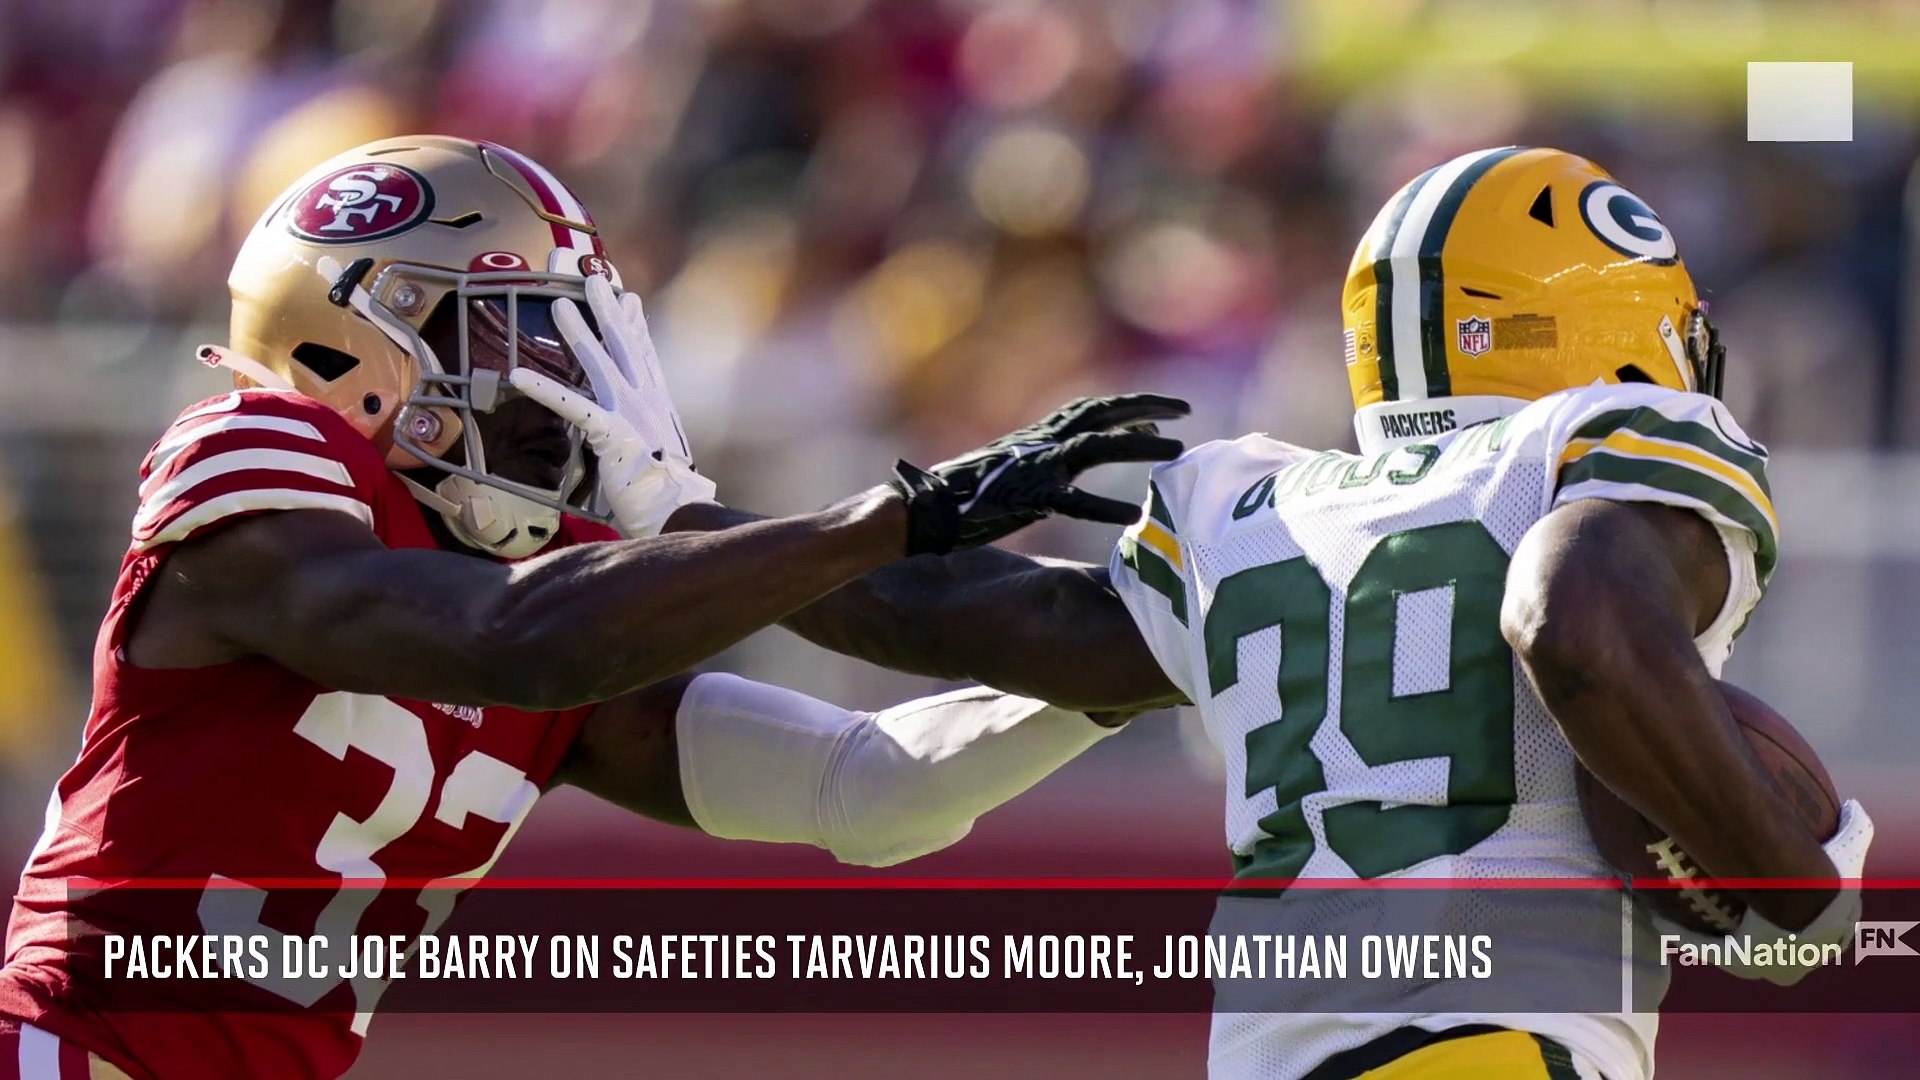 Packers DC Joe Barry on Safeties Tarvarius Moore, Jonathan Owens - video  Dailymotion